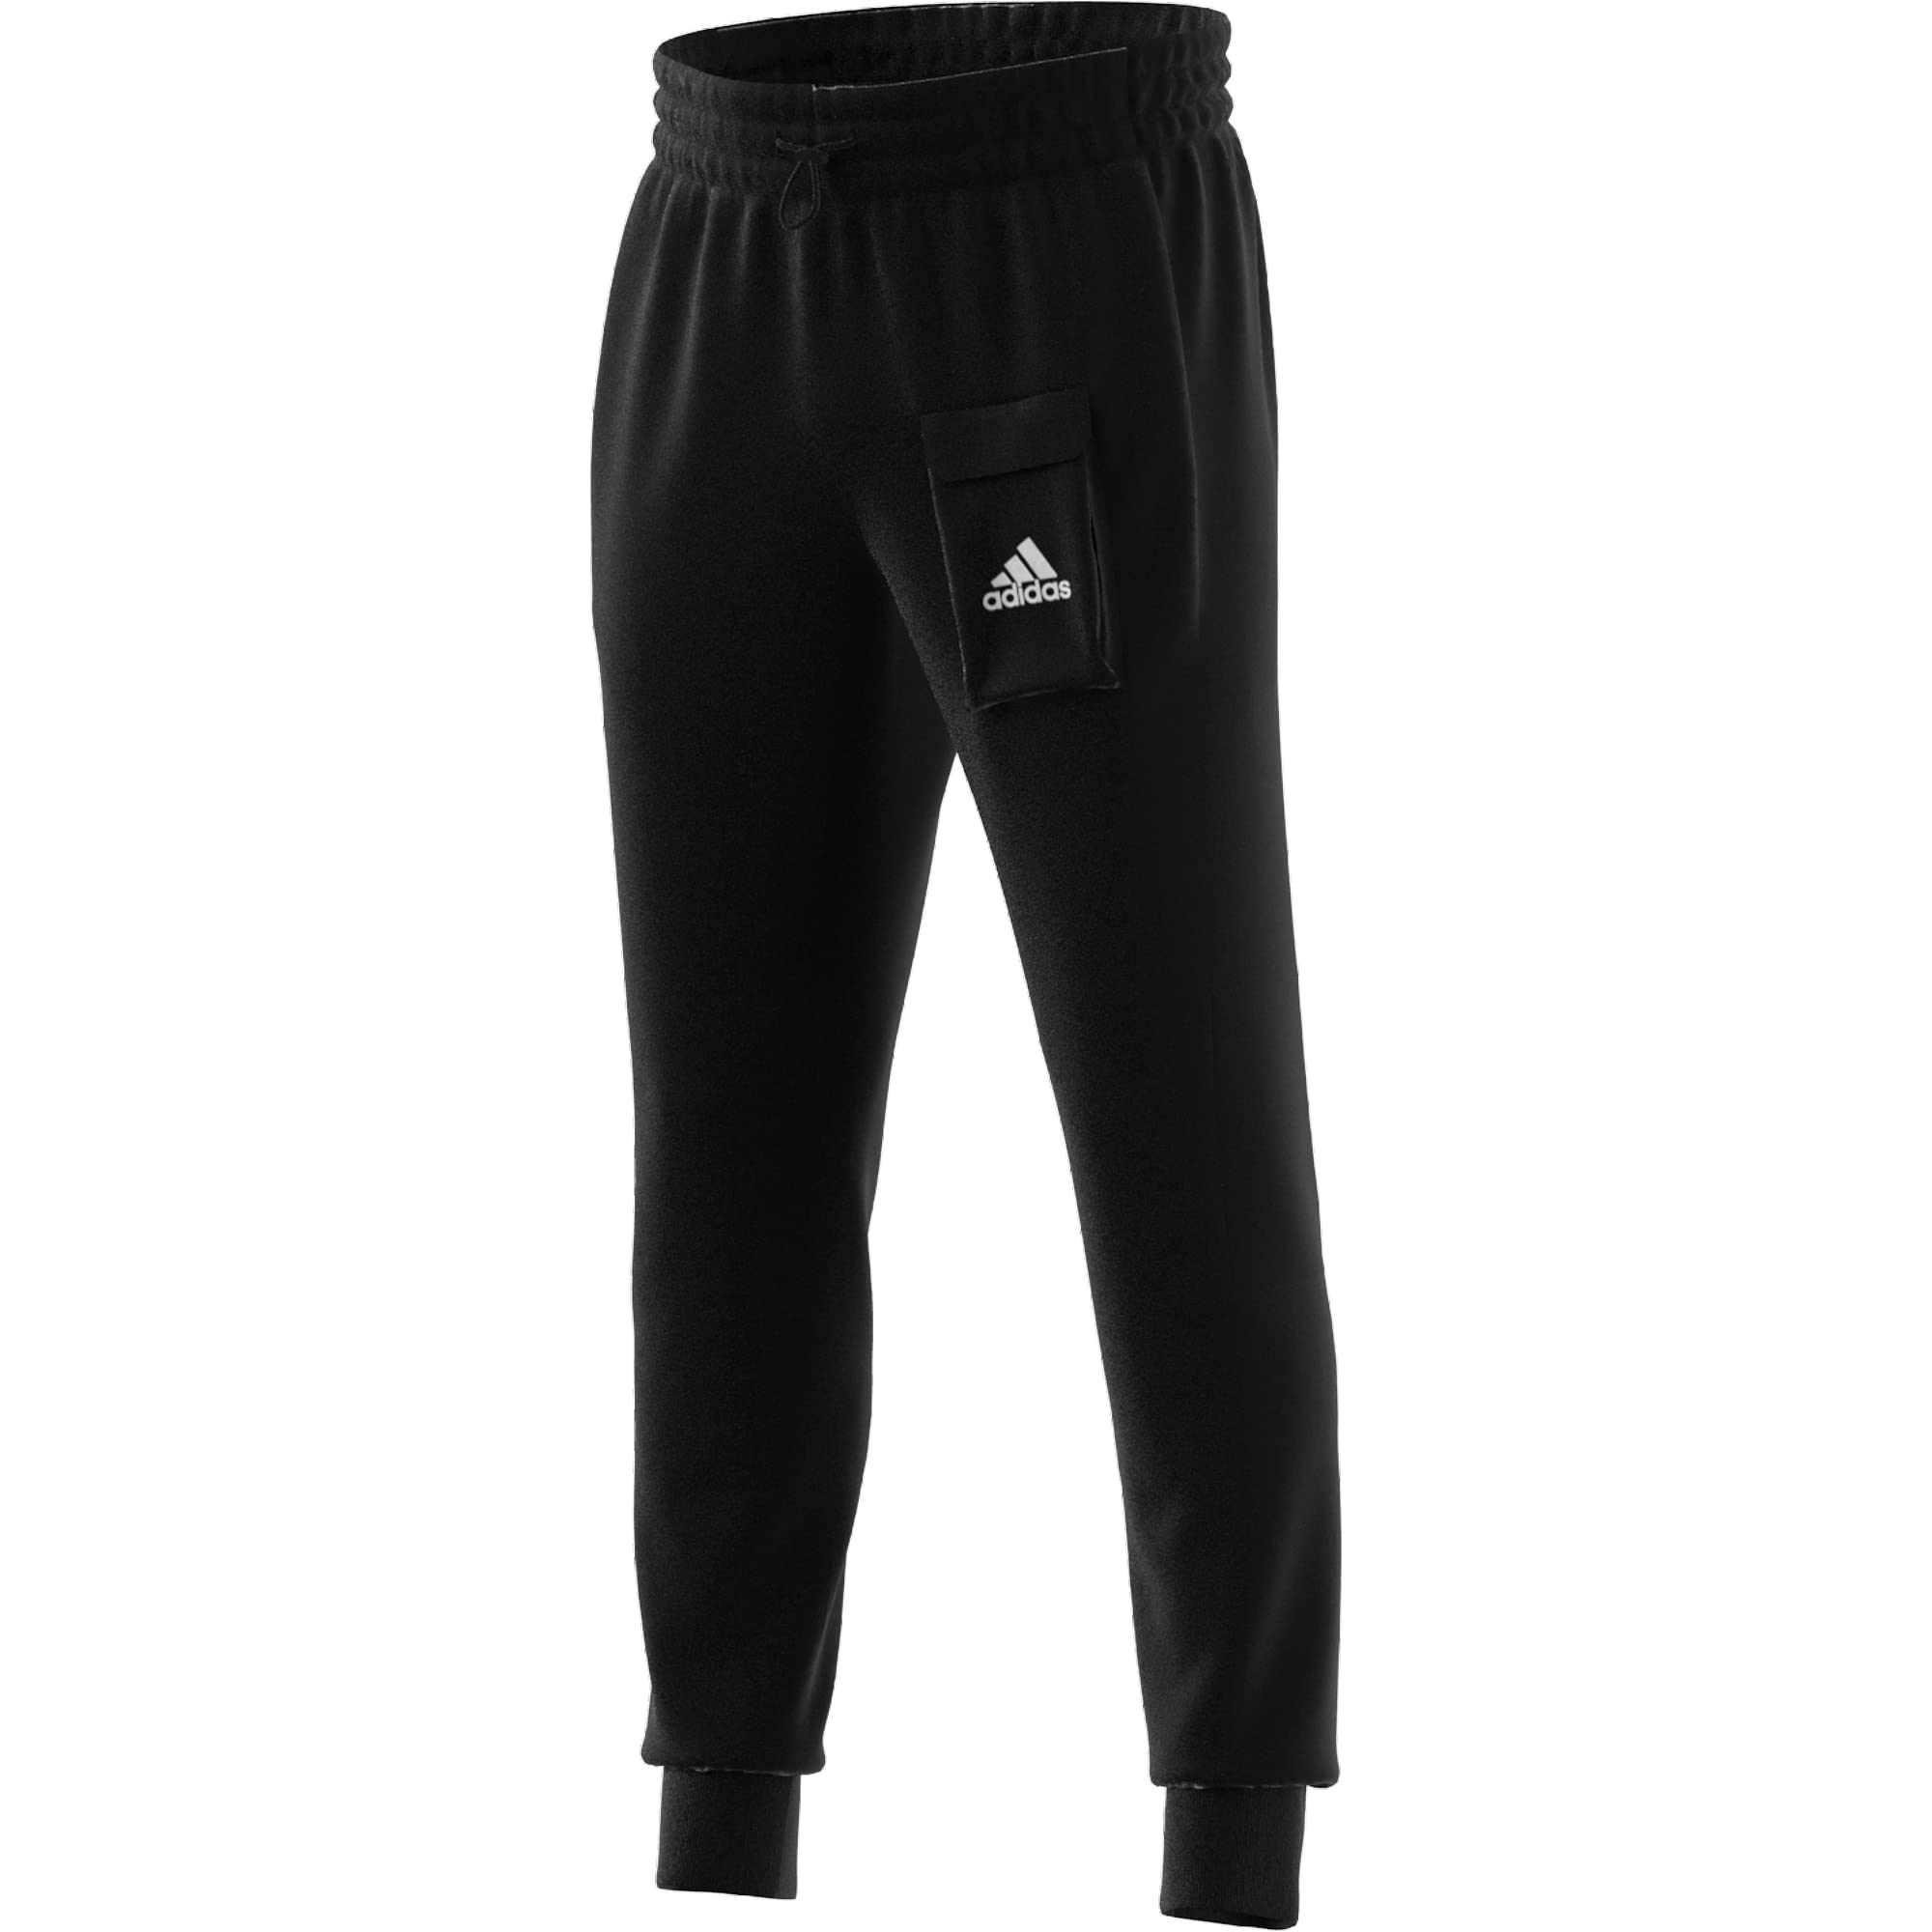 Adidas Men's M BL FT PT Pants Black